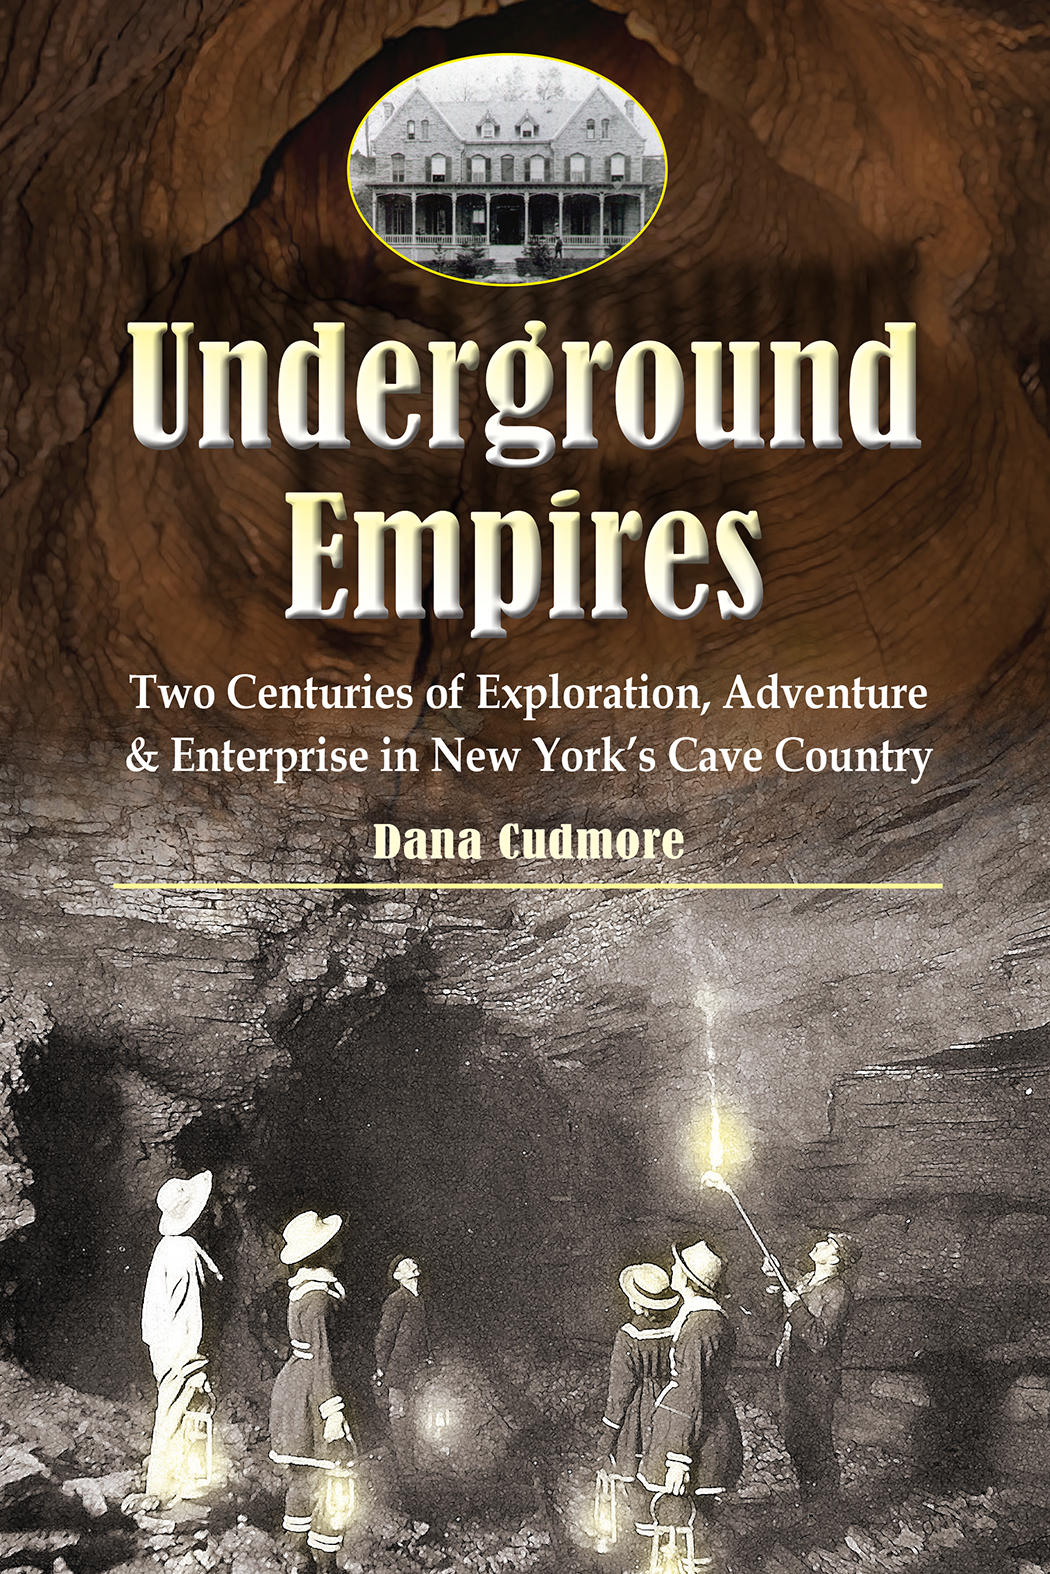 Underground Empires